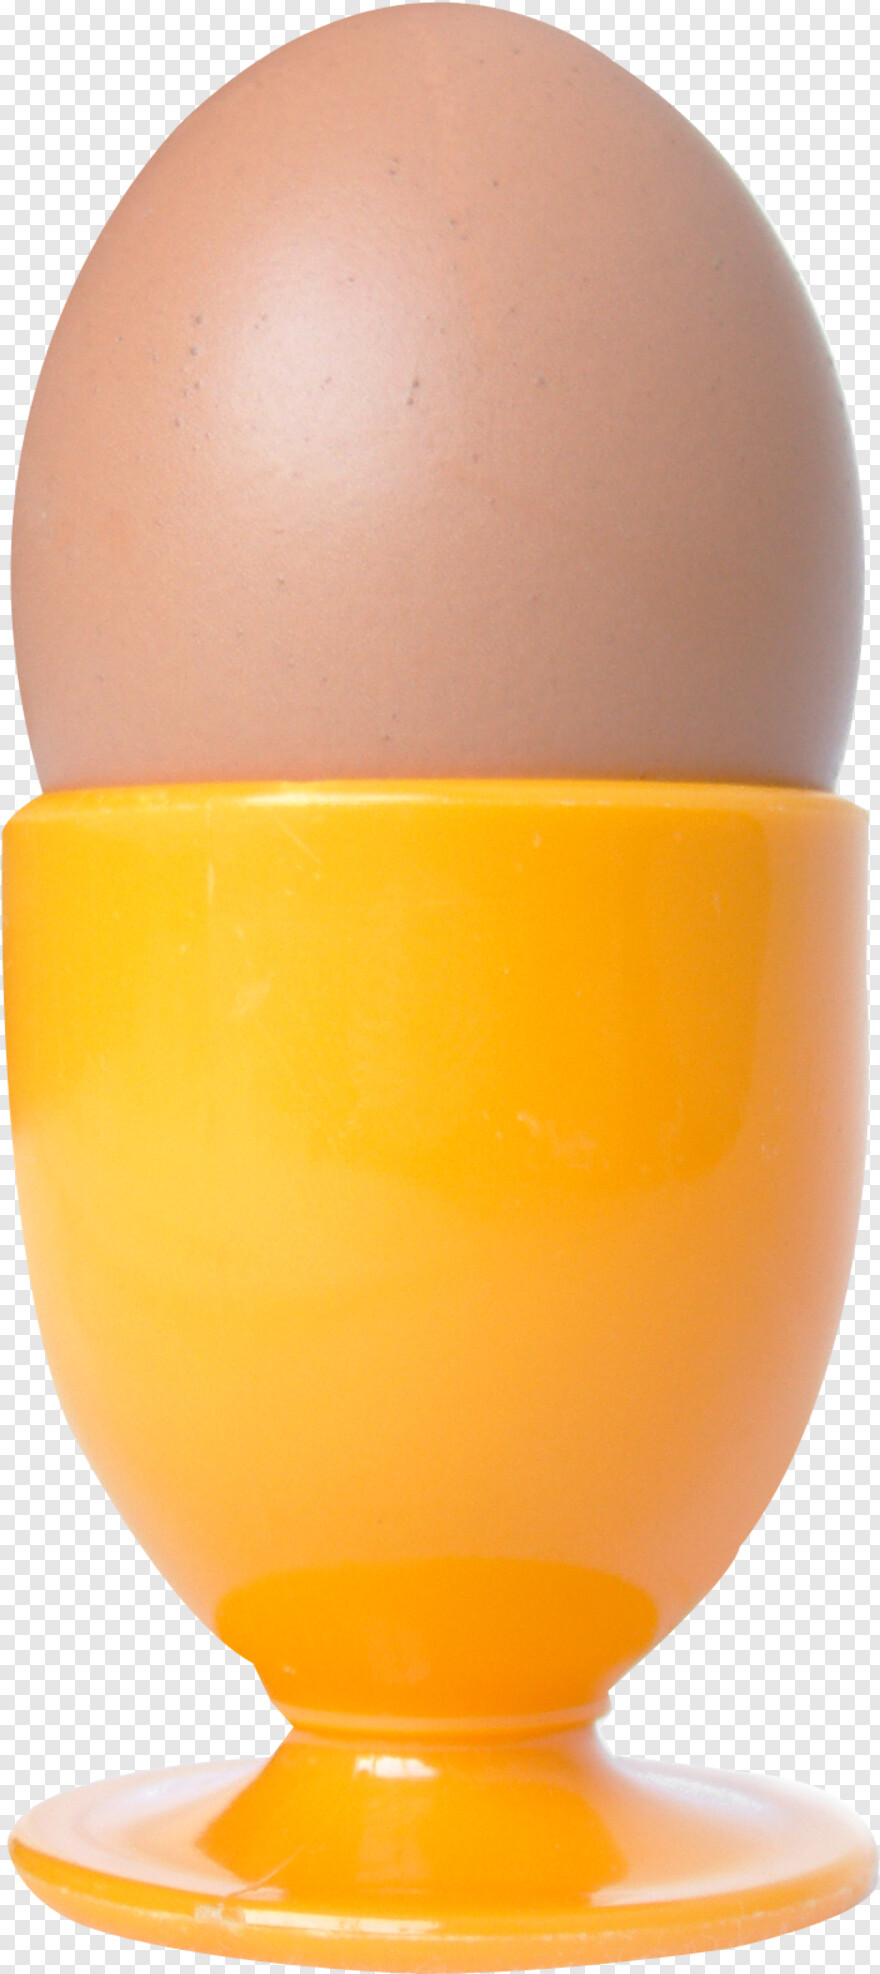 cracked-egg # 937467